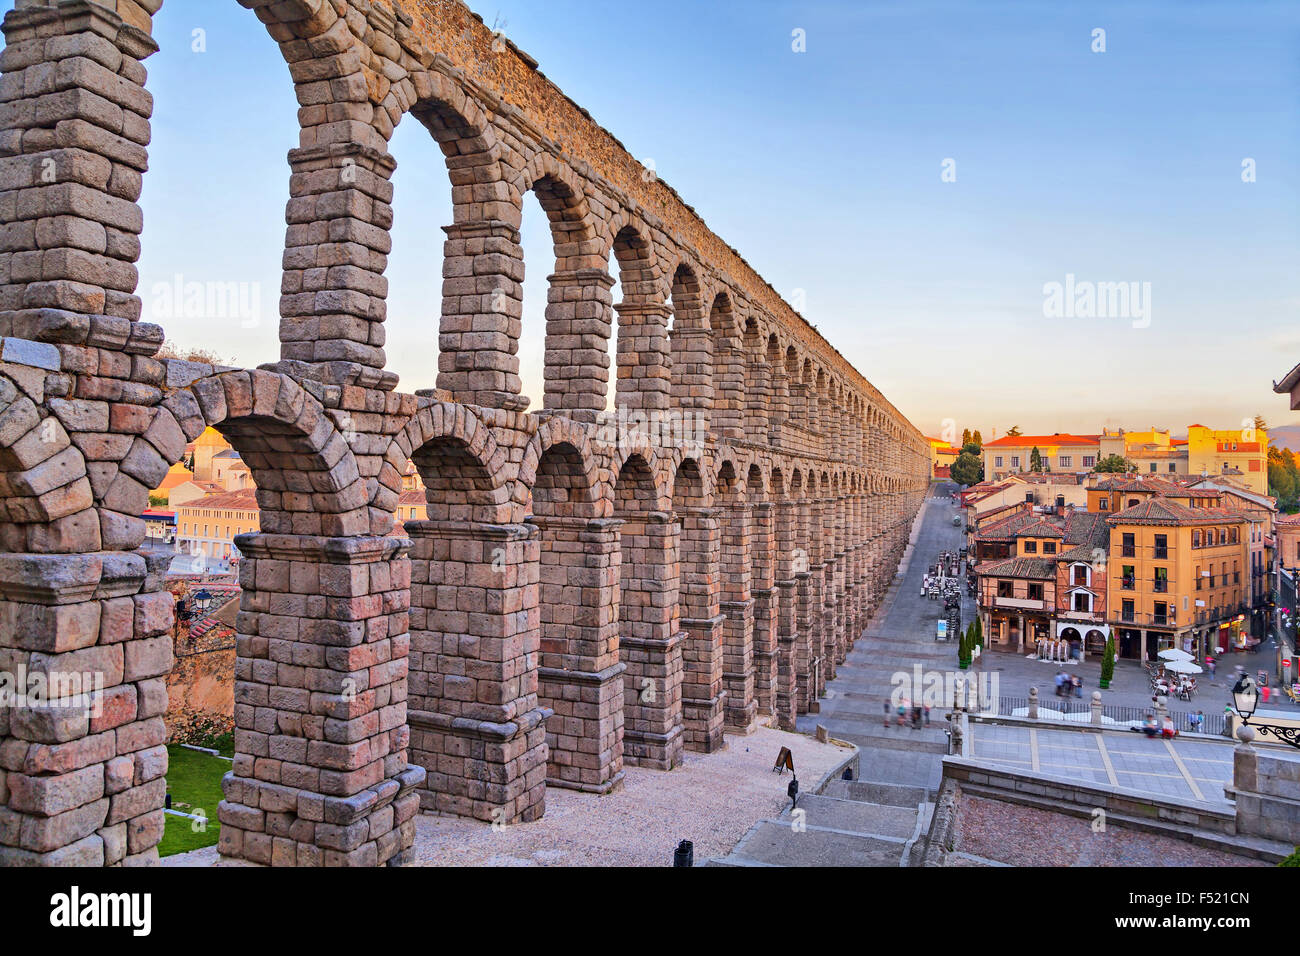 Ancient Roman aqueduct on Plaza del Azoguejo square in Segovia, Spain Stock Photo